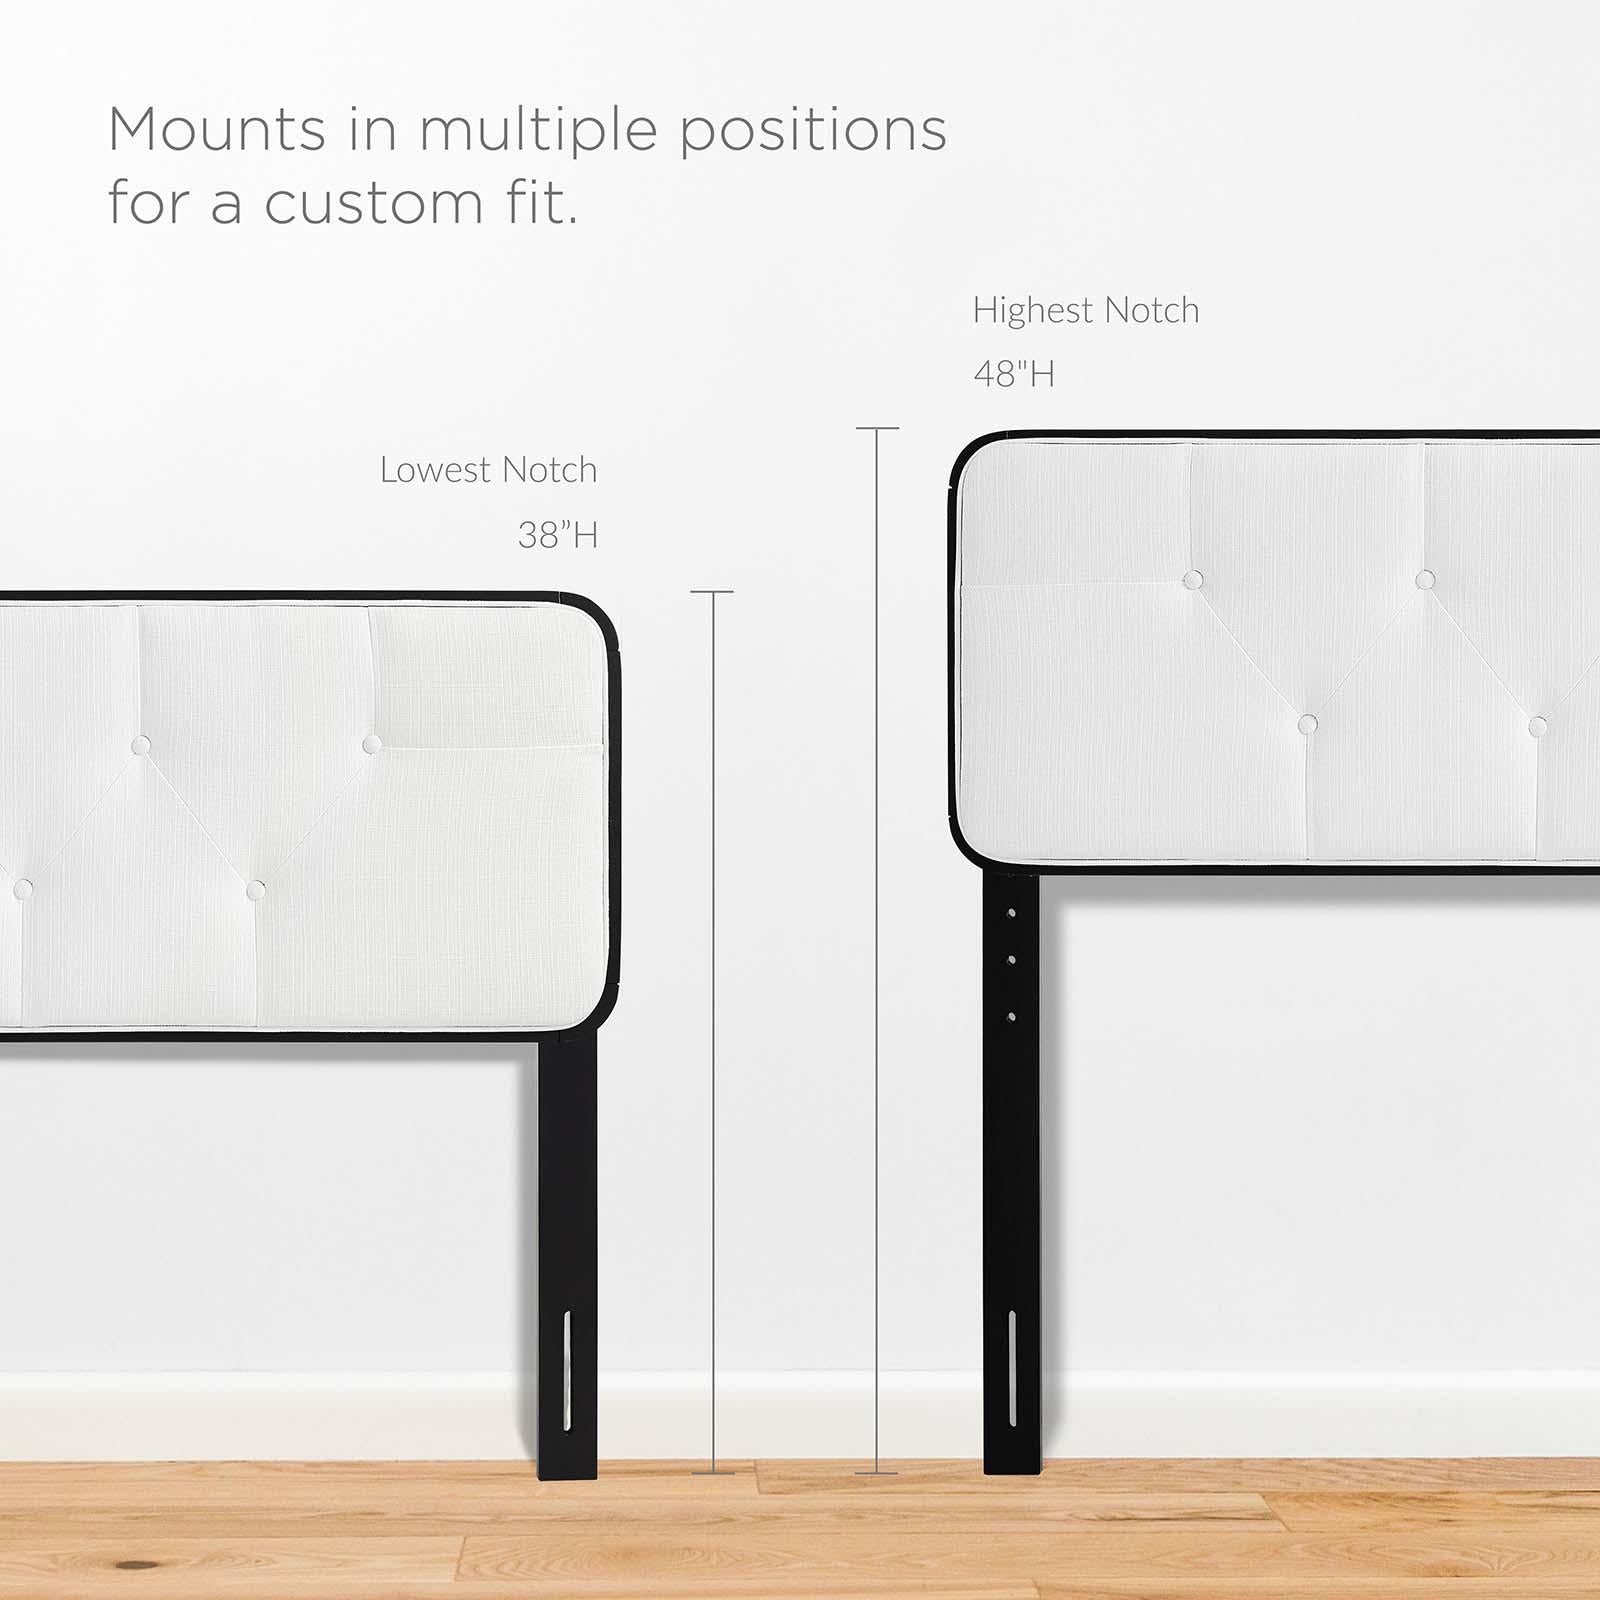 Modway Furniture Modern Bridgette Full Wood Platform Bed With Angular Frame - MOD-6643